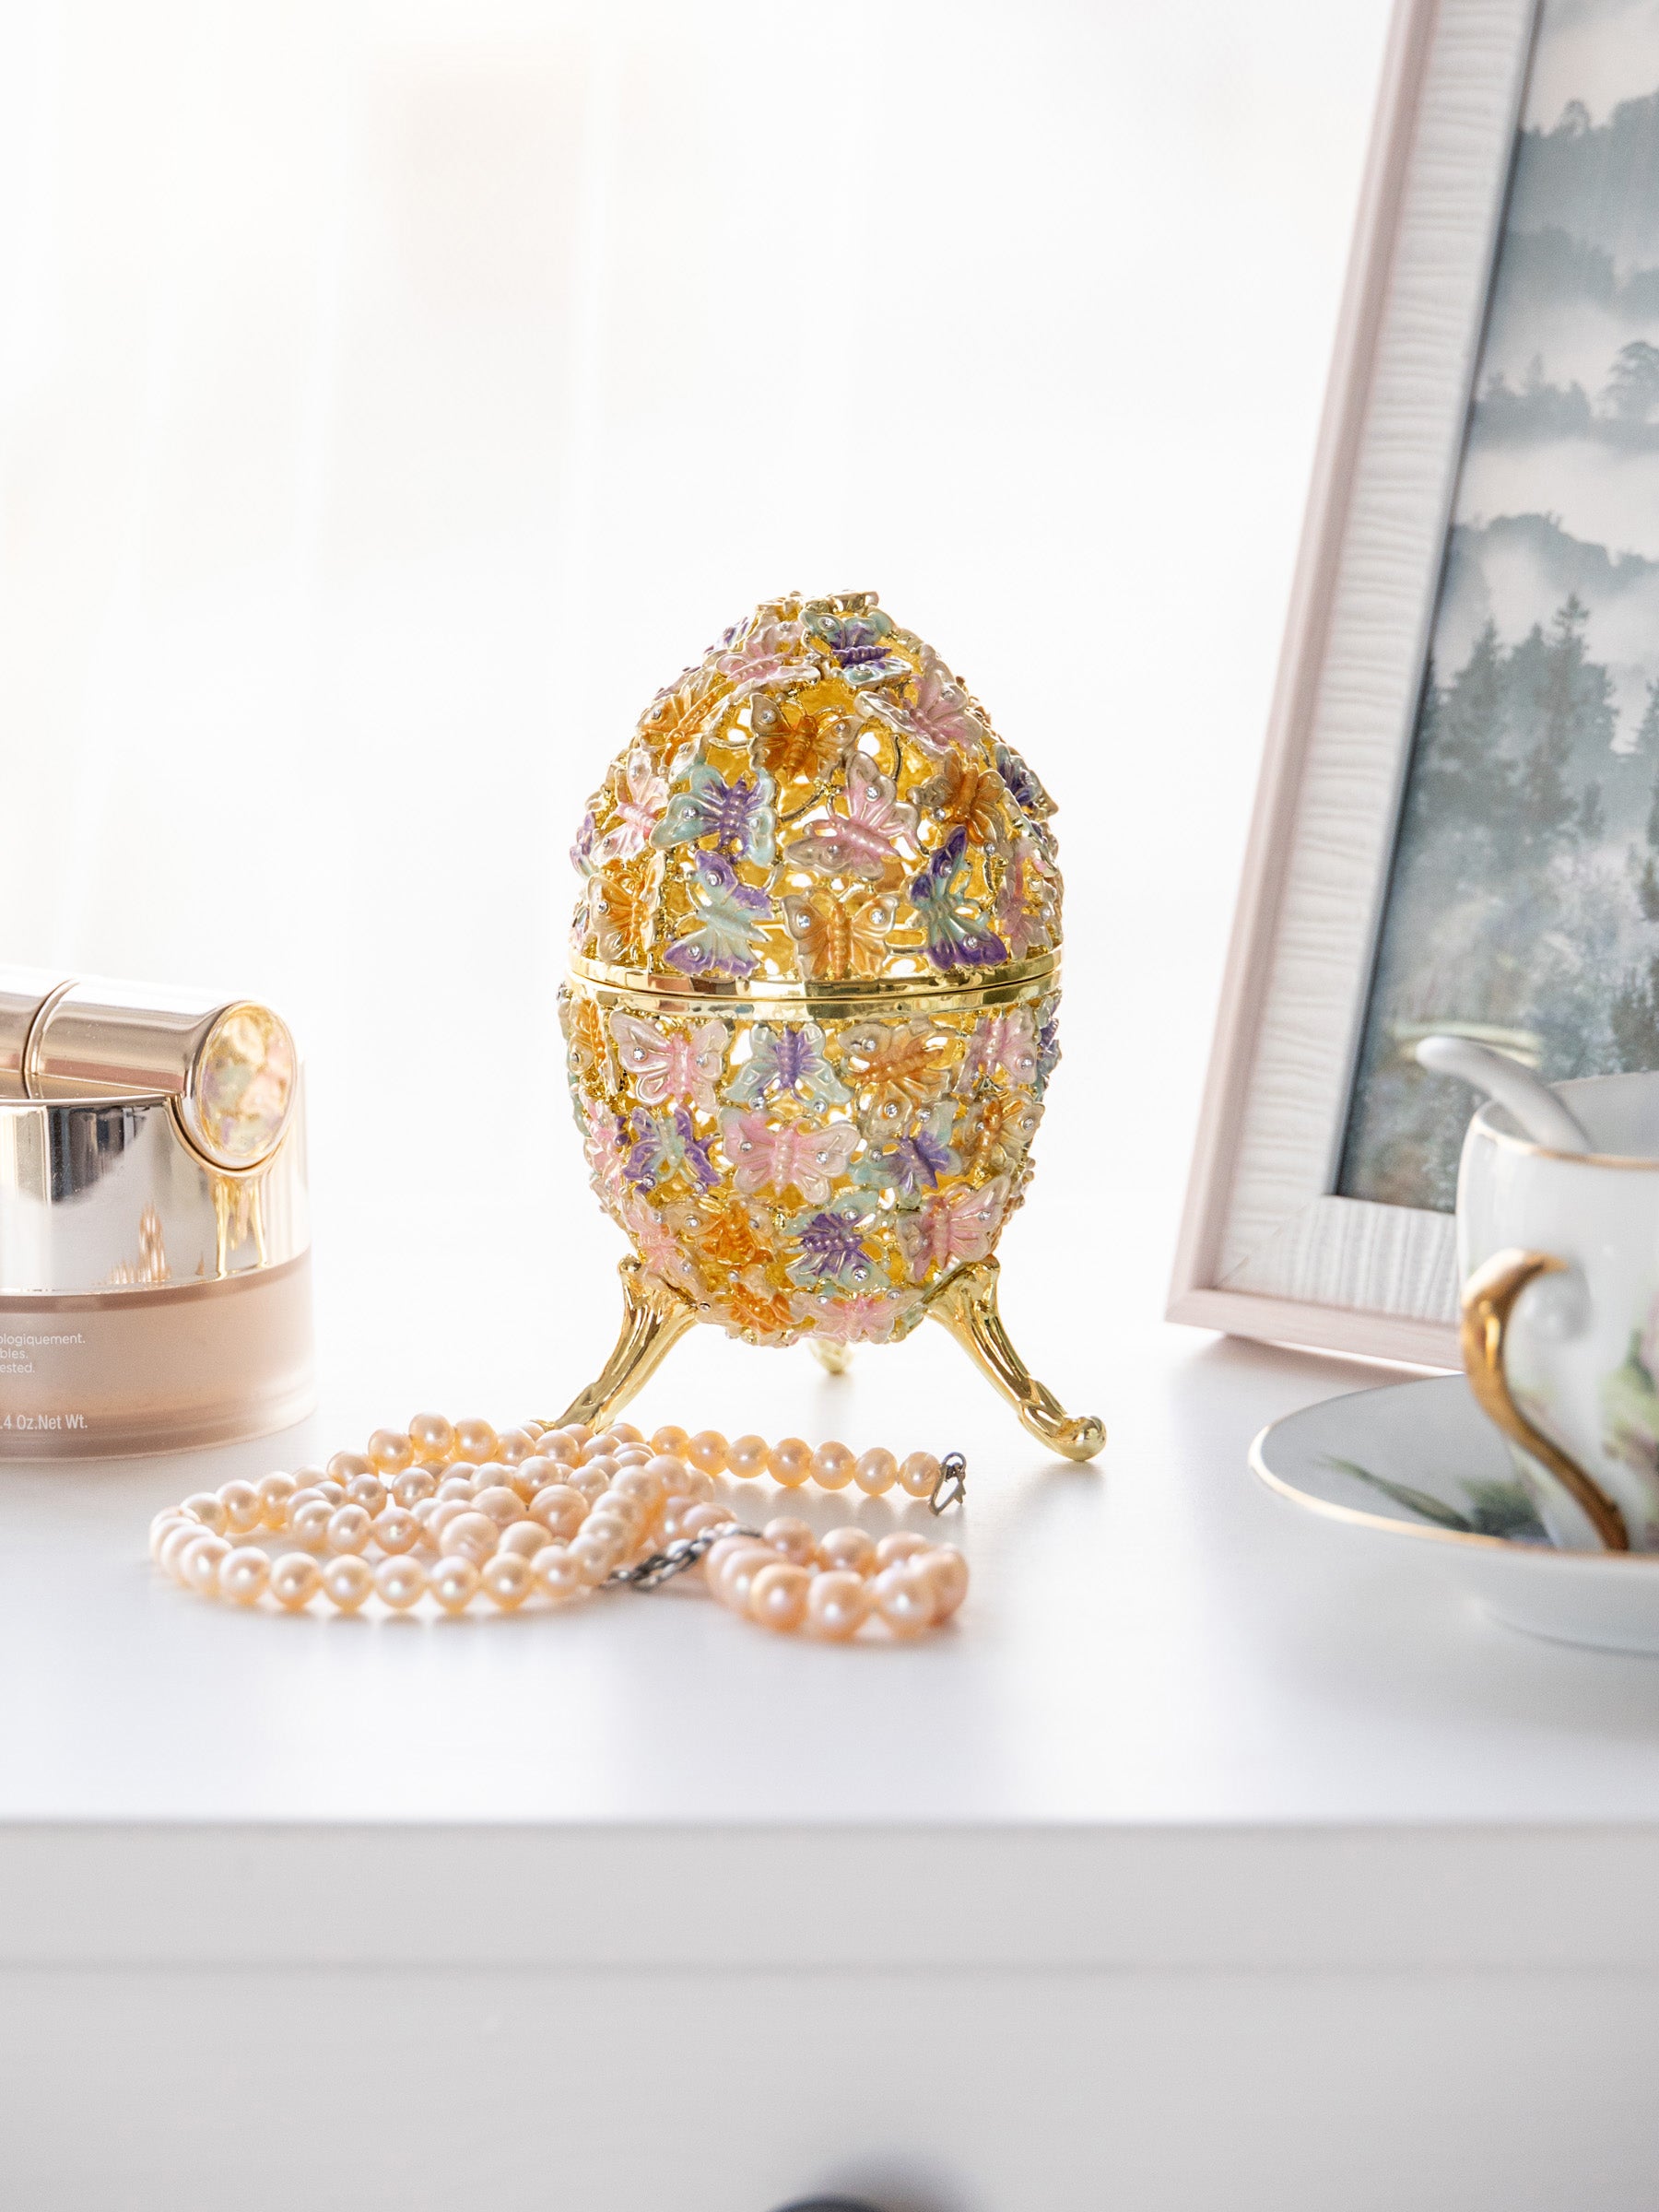 Goldenes Fabergé-Ei mit Schmetterlingen verziert